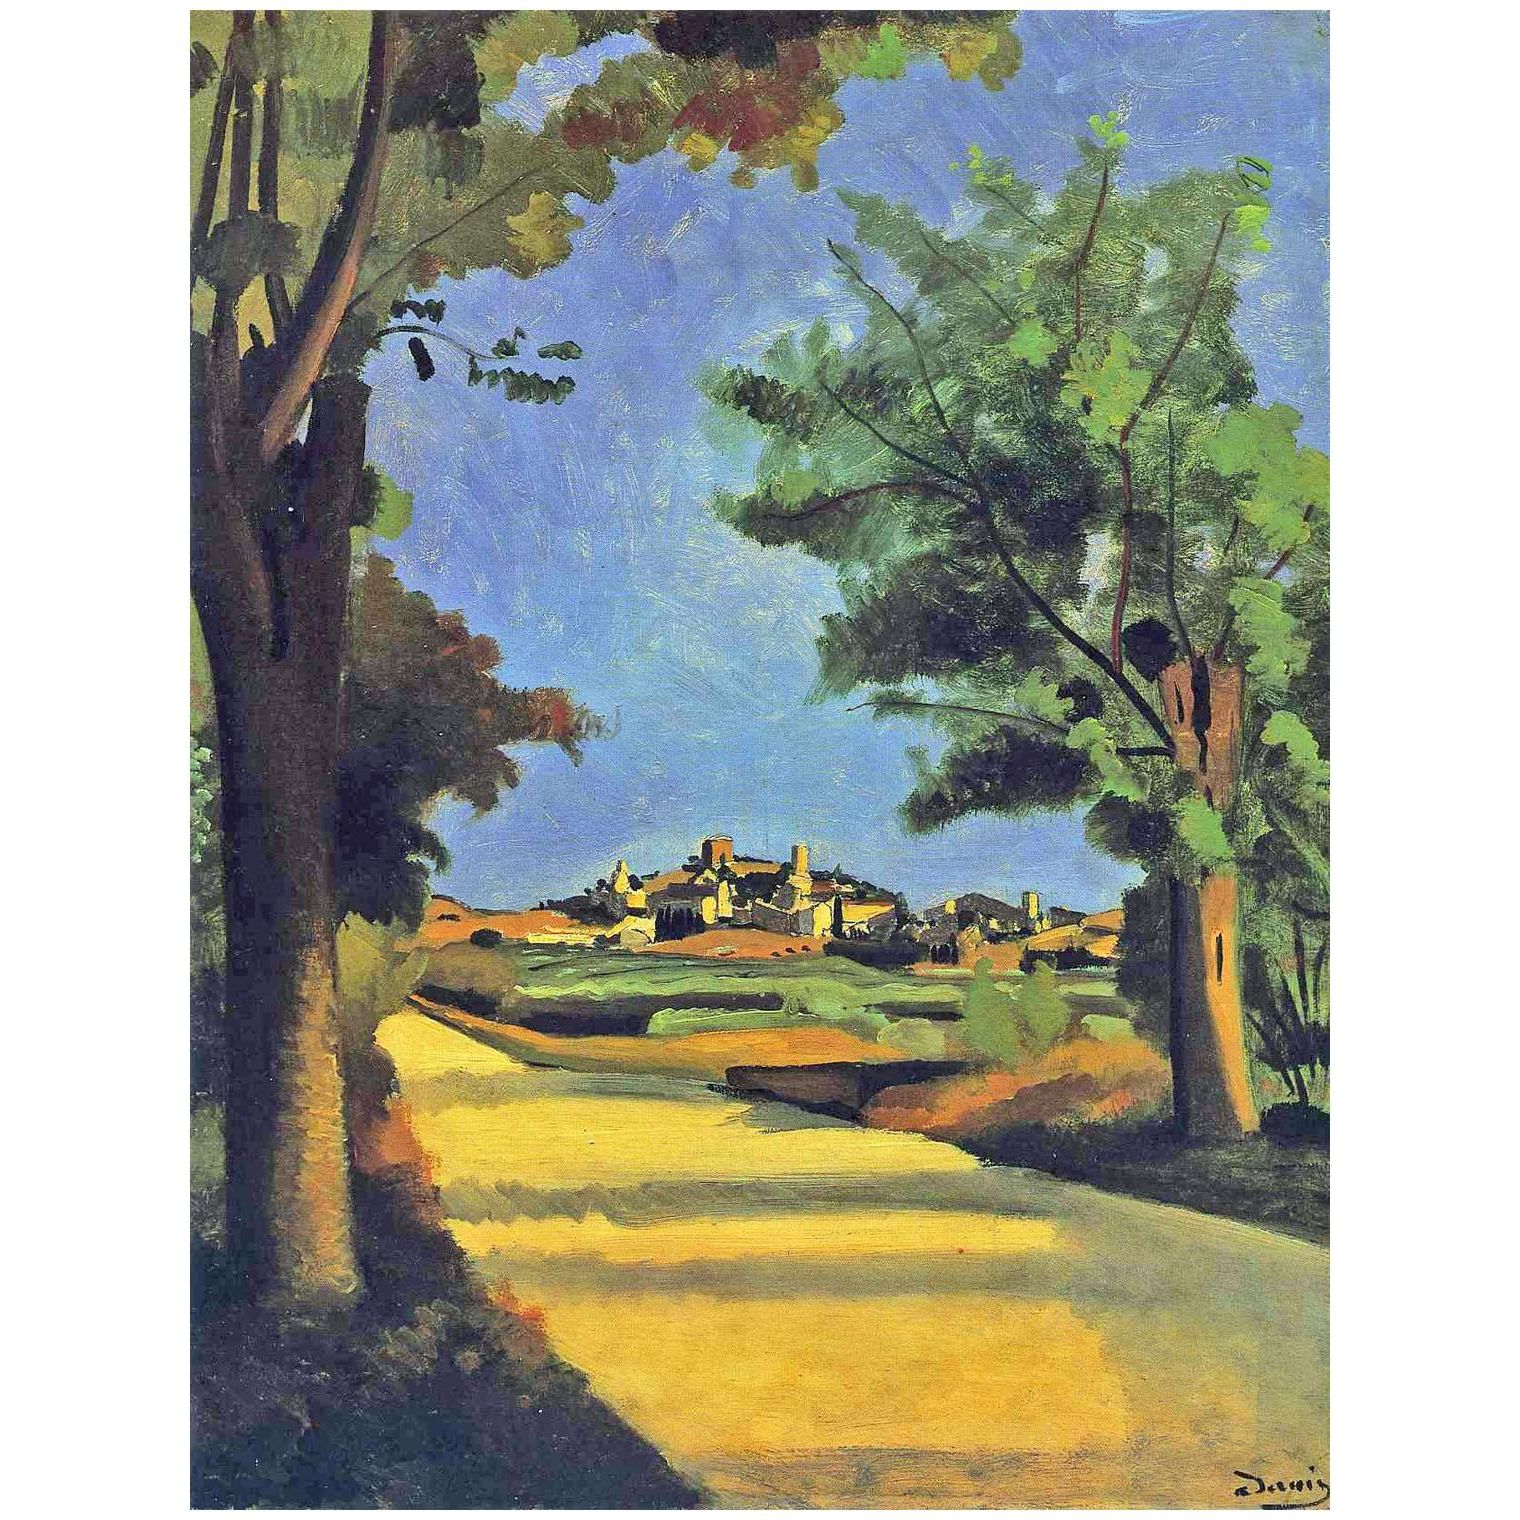 Andre Derain. La route. 1932. Musee de l’Orangerie Paris